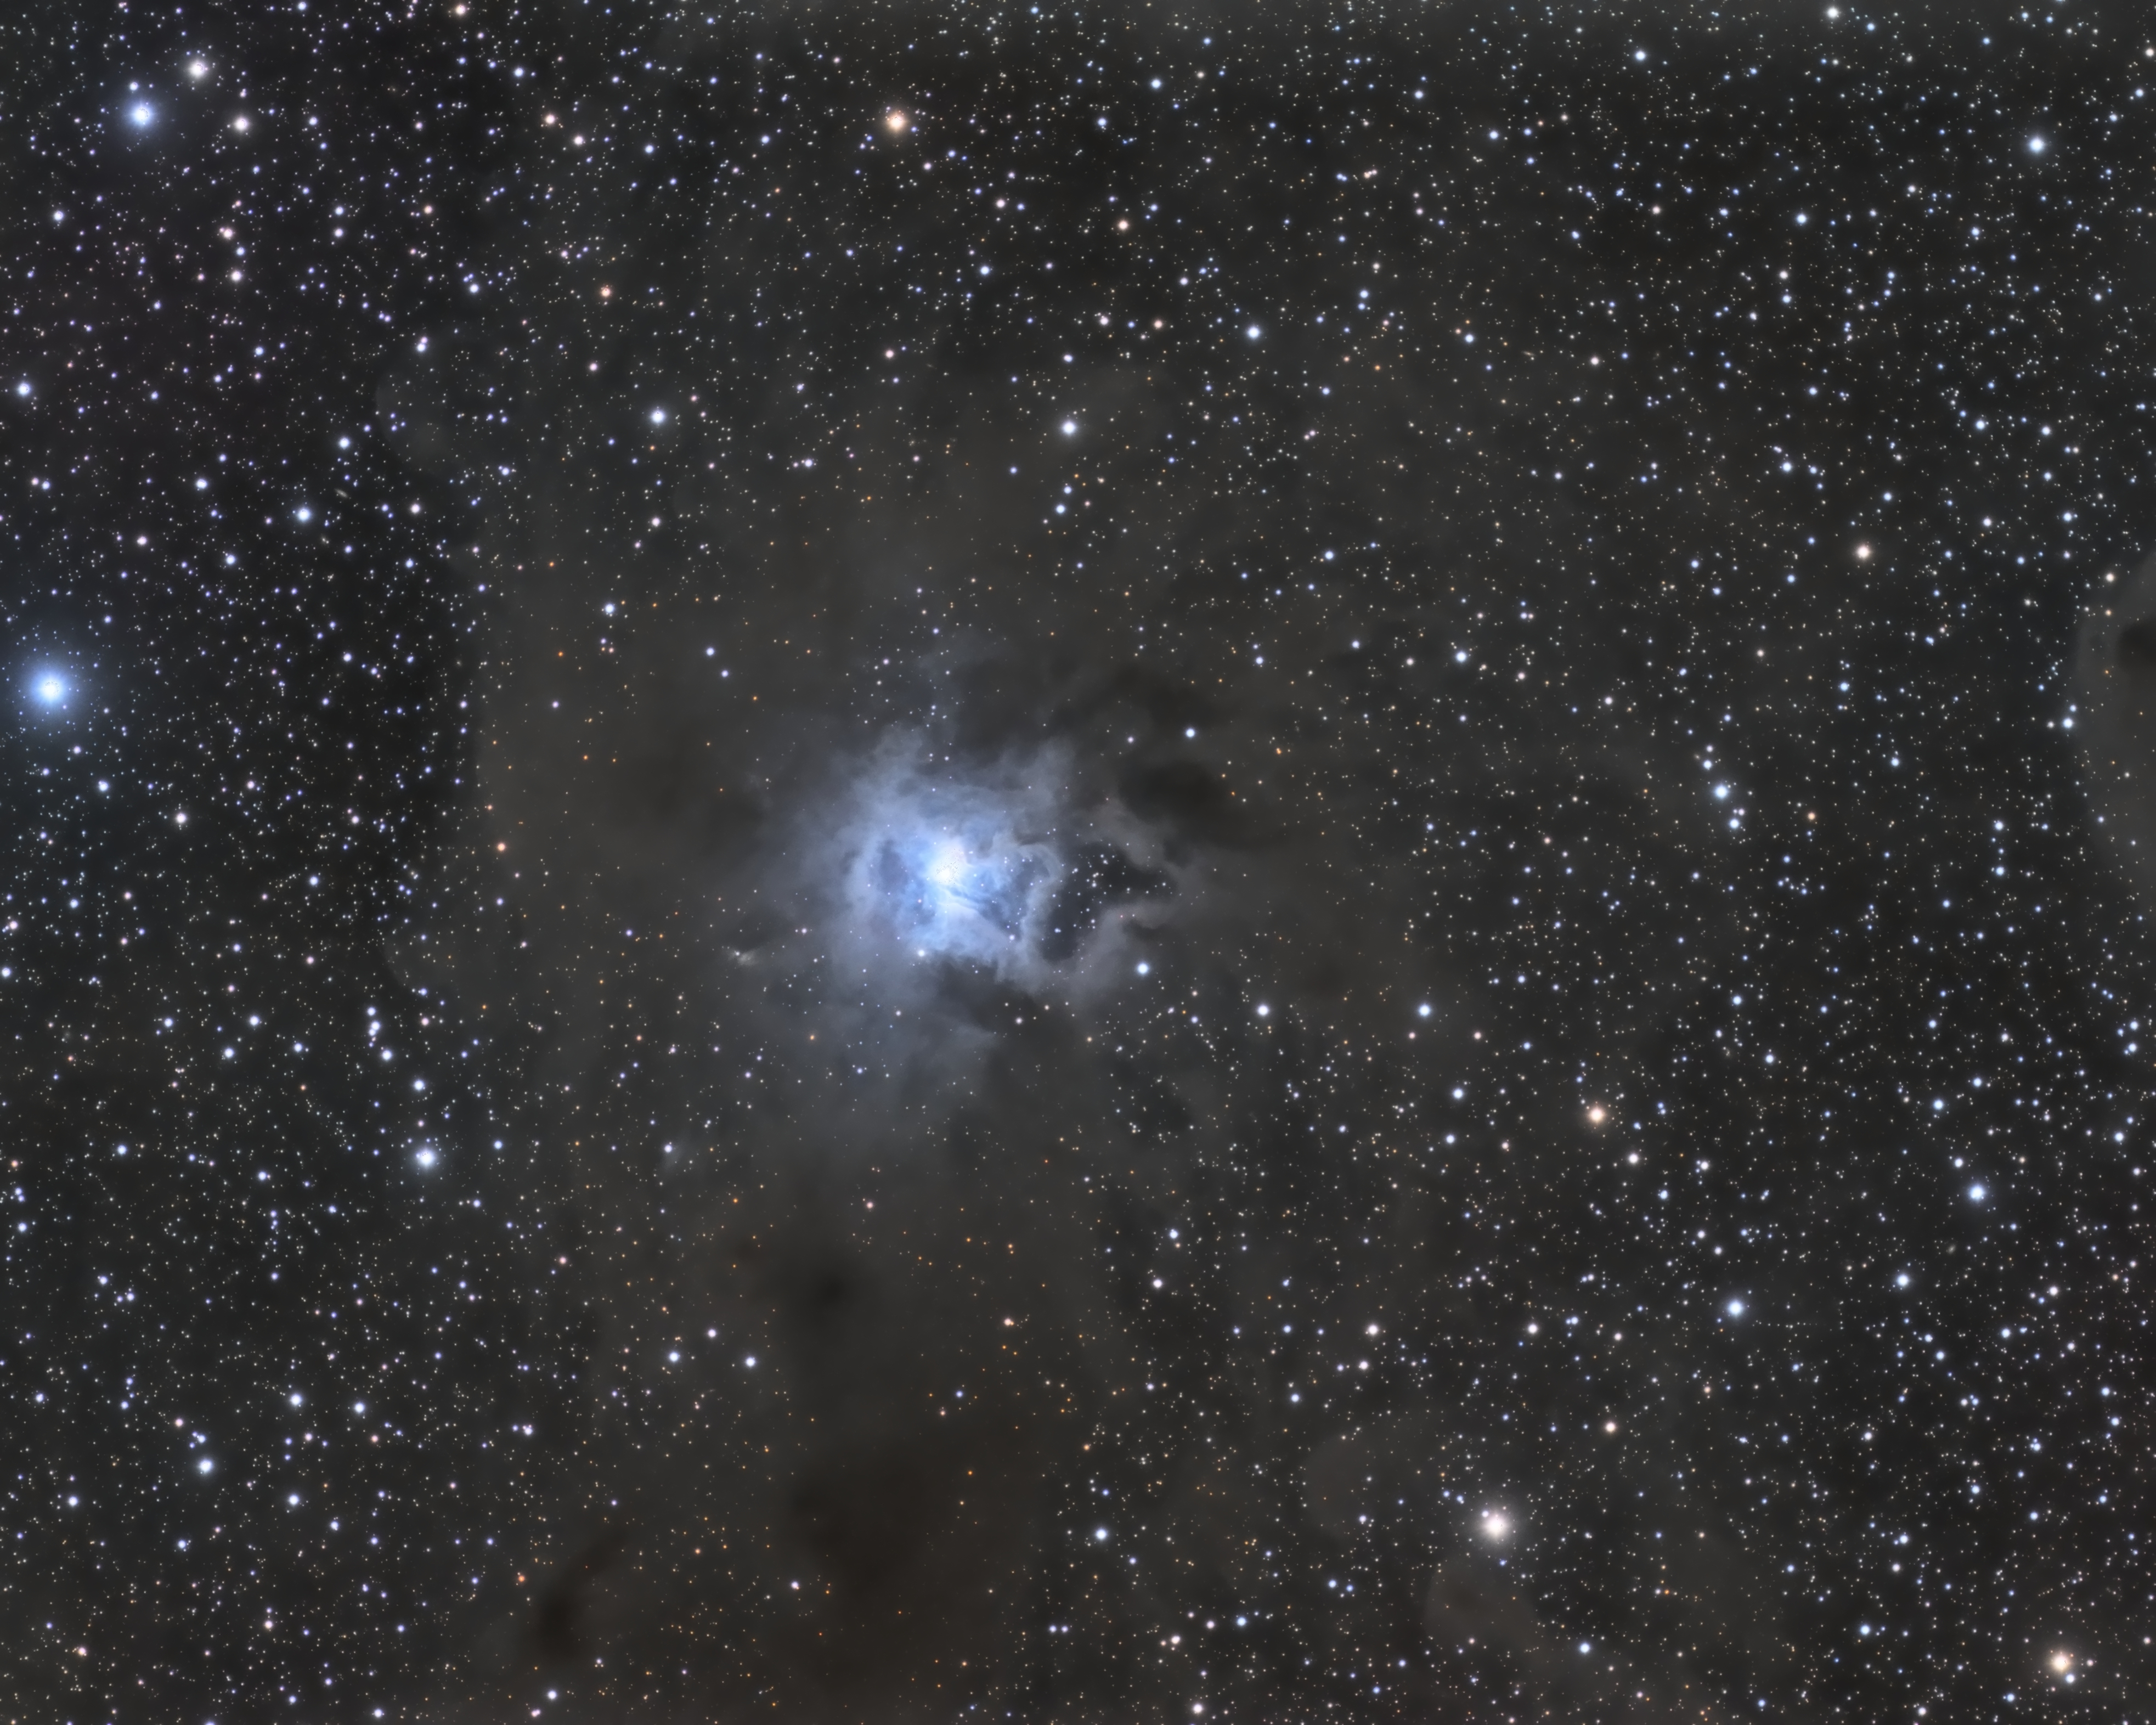 NGC7023_V2.jpg